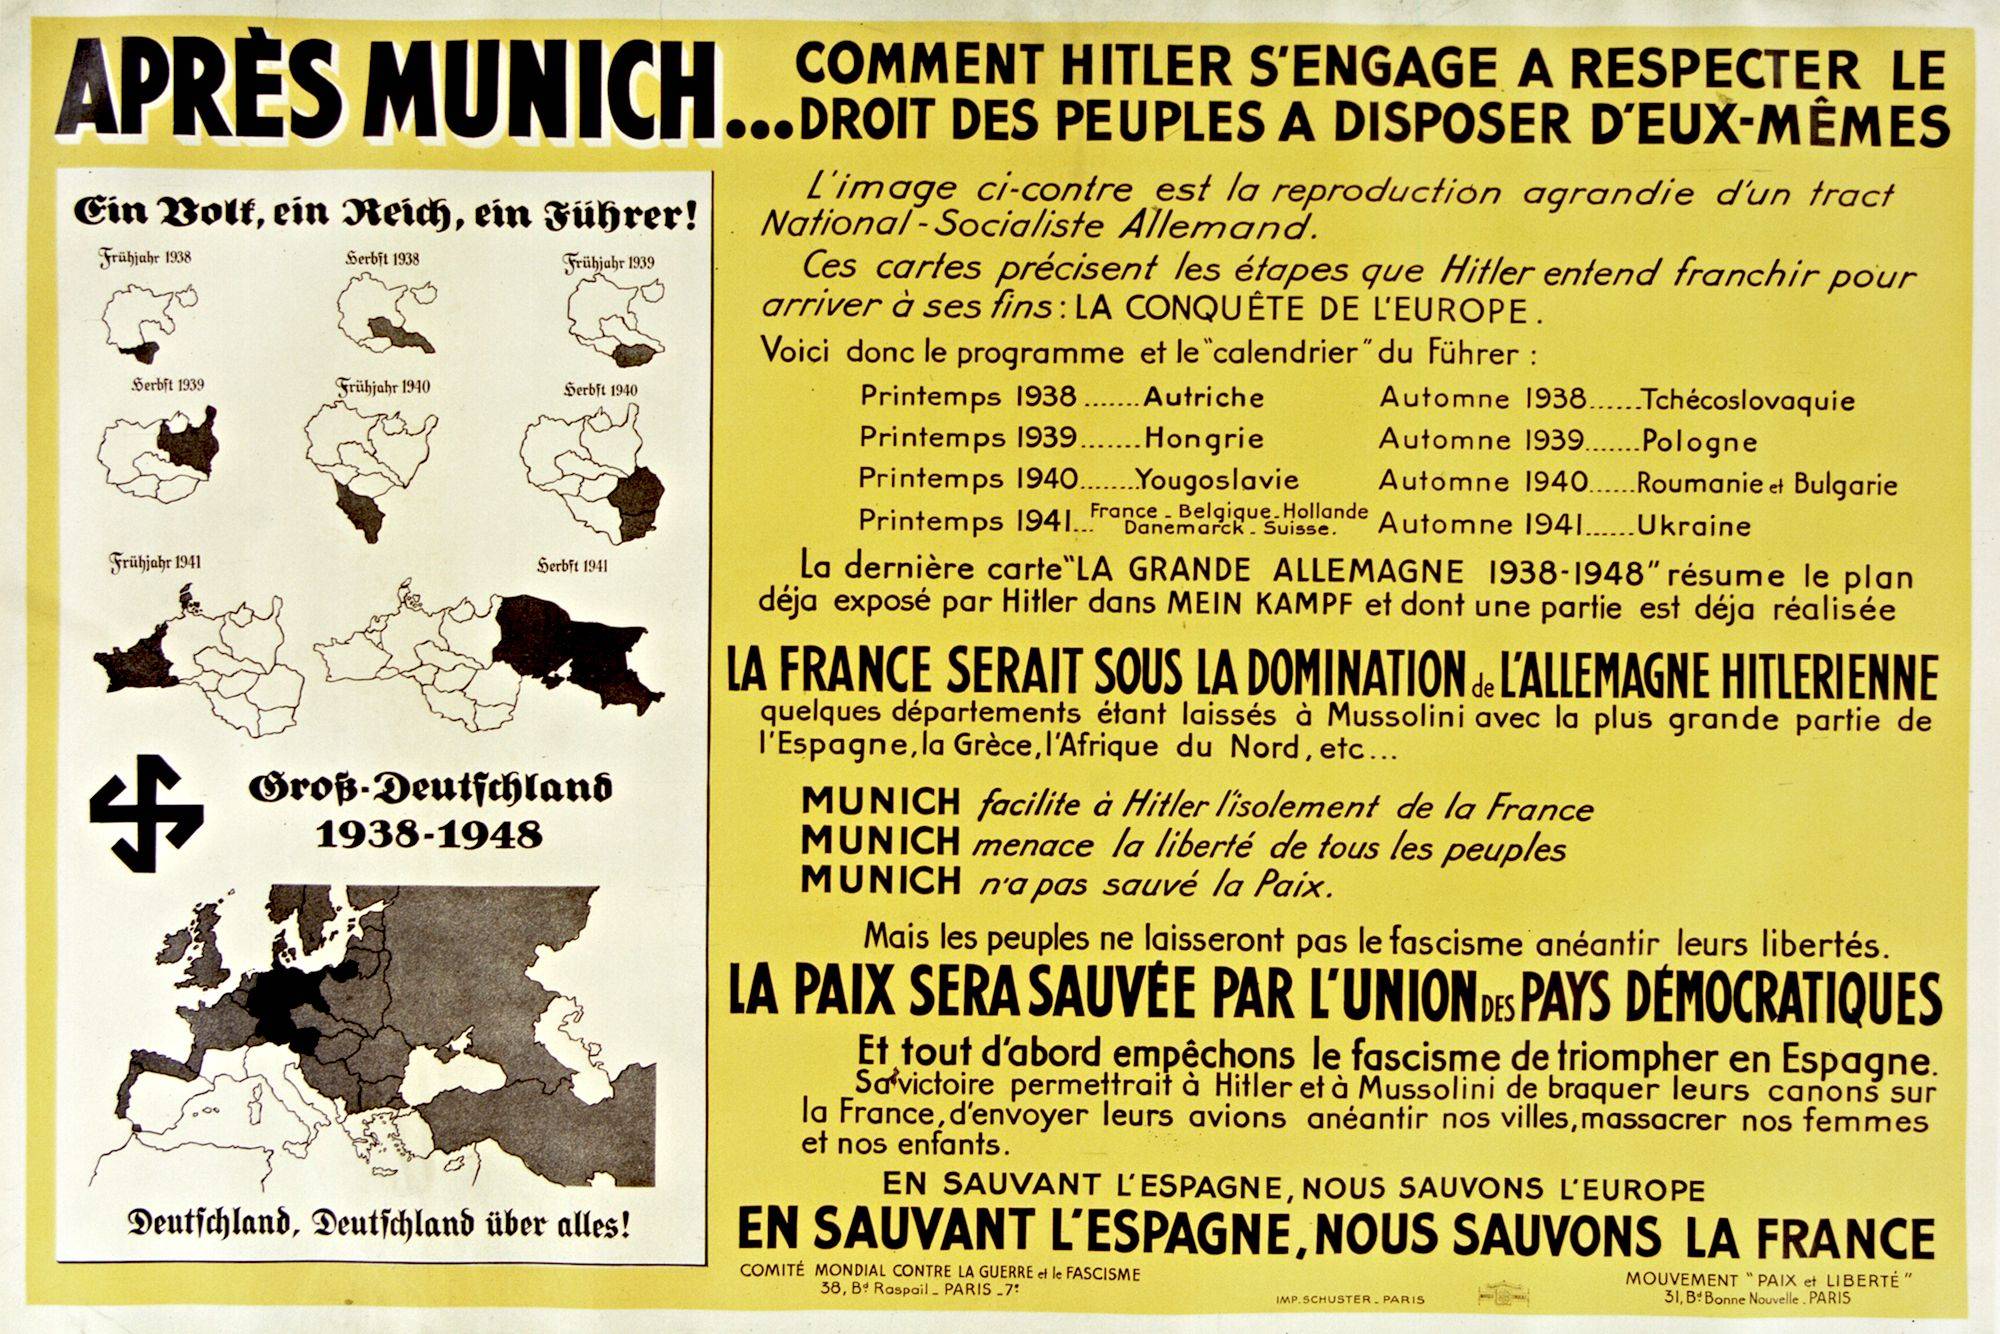 Comité mondial contre la guerre et le fascisme et du mouvement "Paix et Liberté", 1938 - source : Gallica-BnF